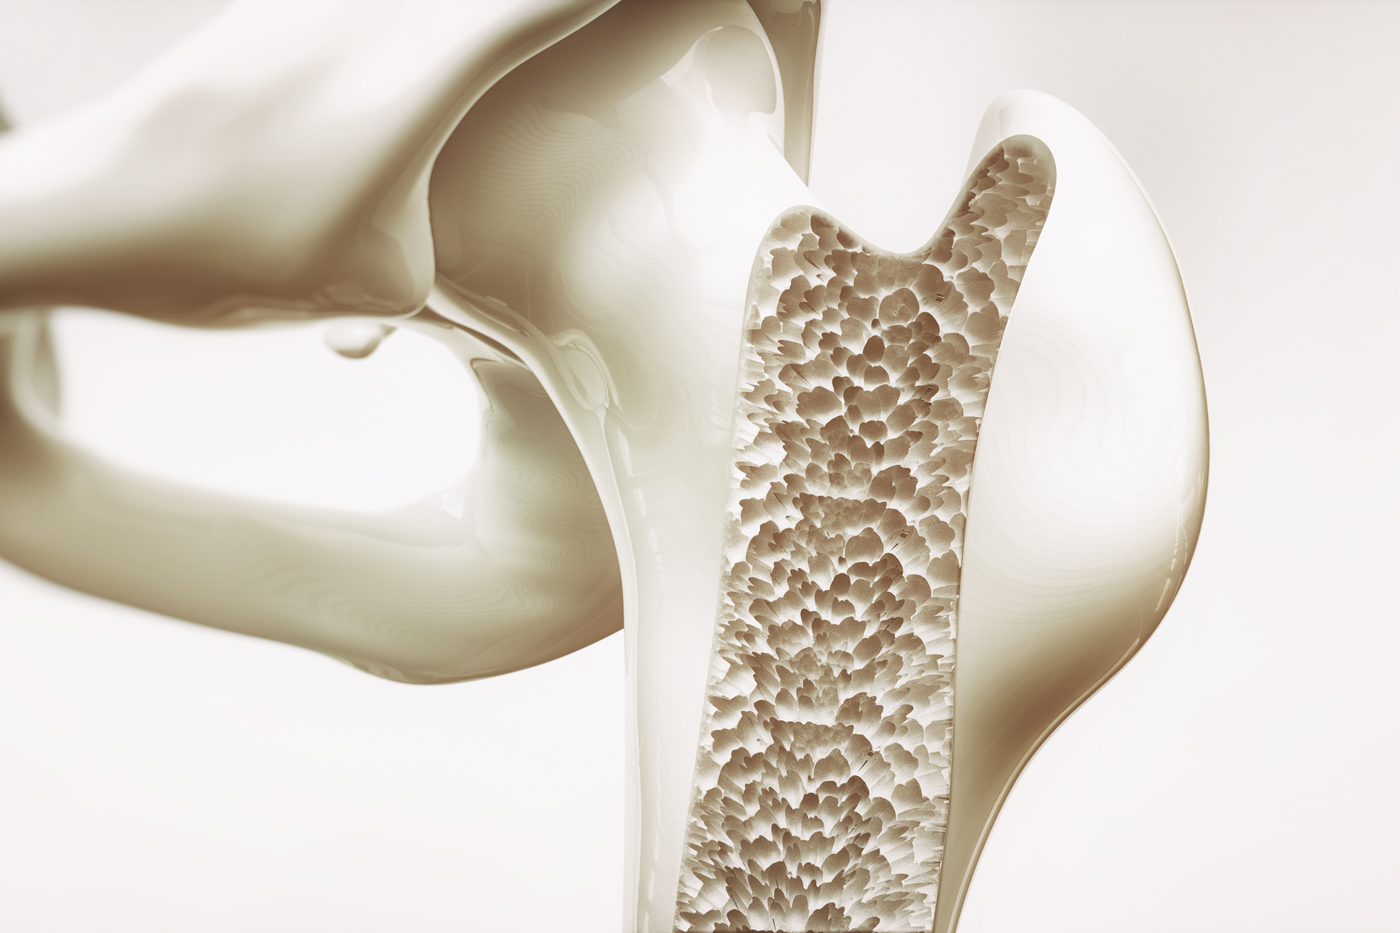 Darstellung einer Osteoporose im Gelenk